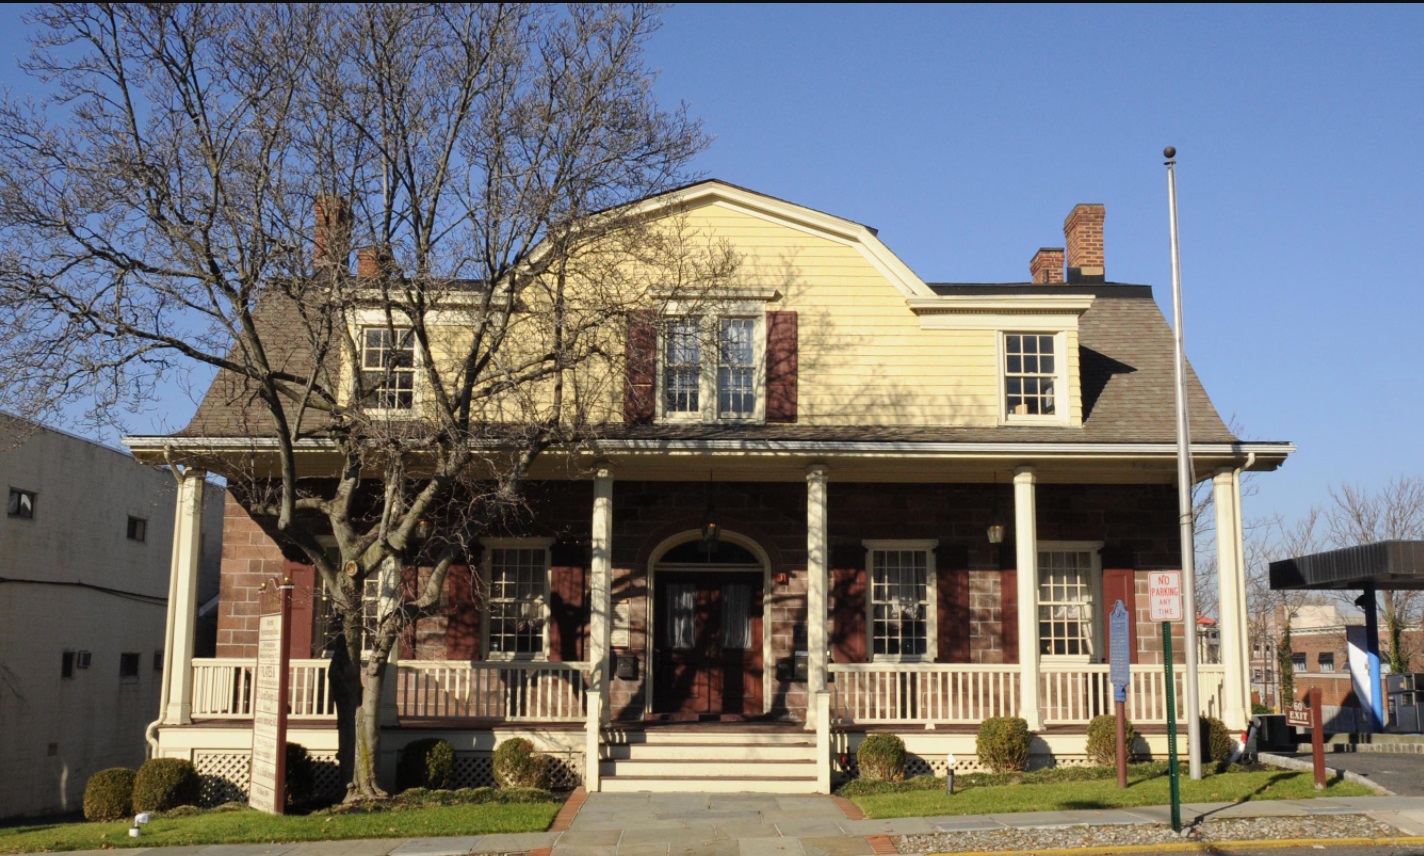 Здание построено в 1800.
Оно внесено в Национальный реестр исторических мест Соединенных Штатов Америки.
Энглвуд, штат Нью-Джерси, США.